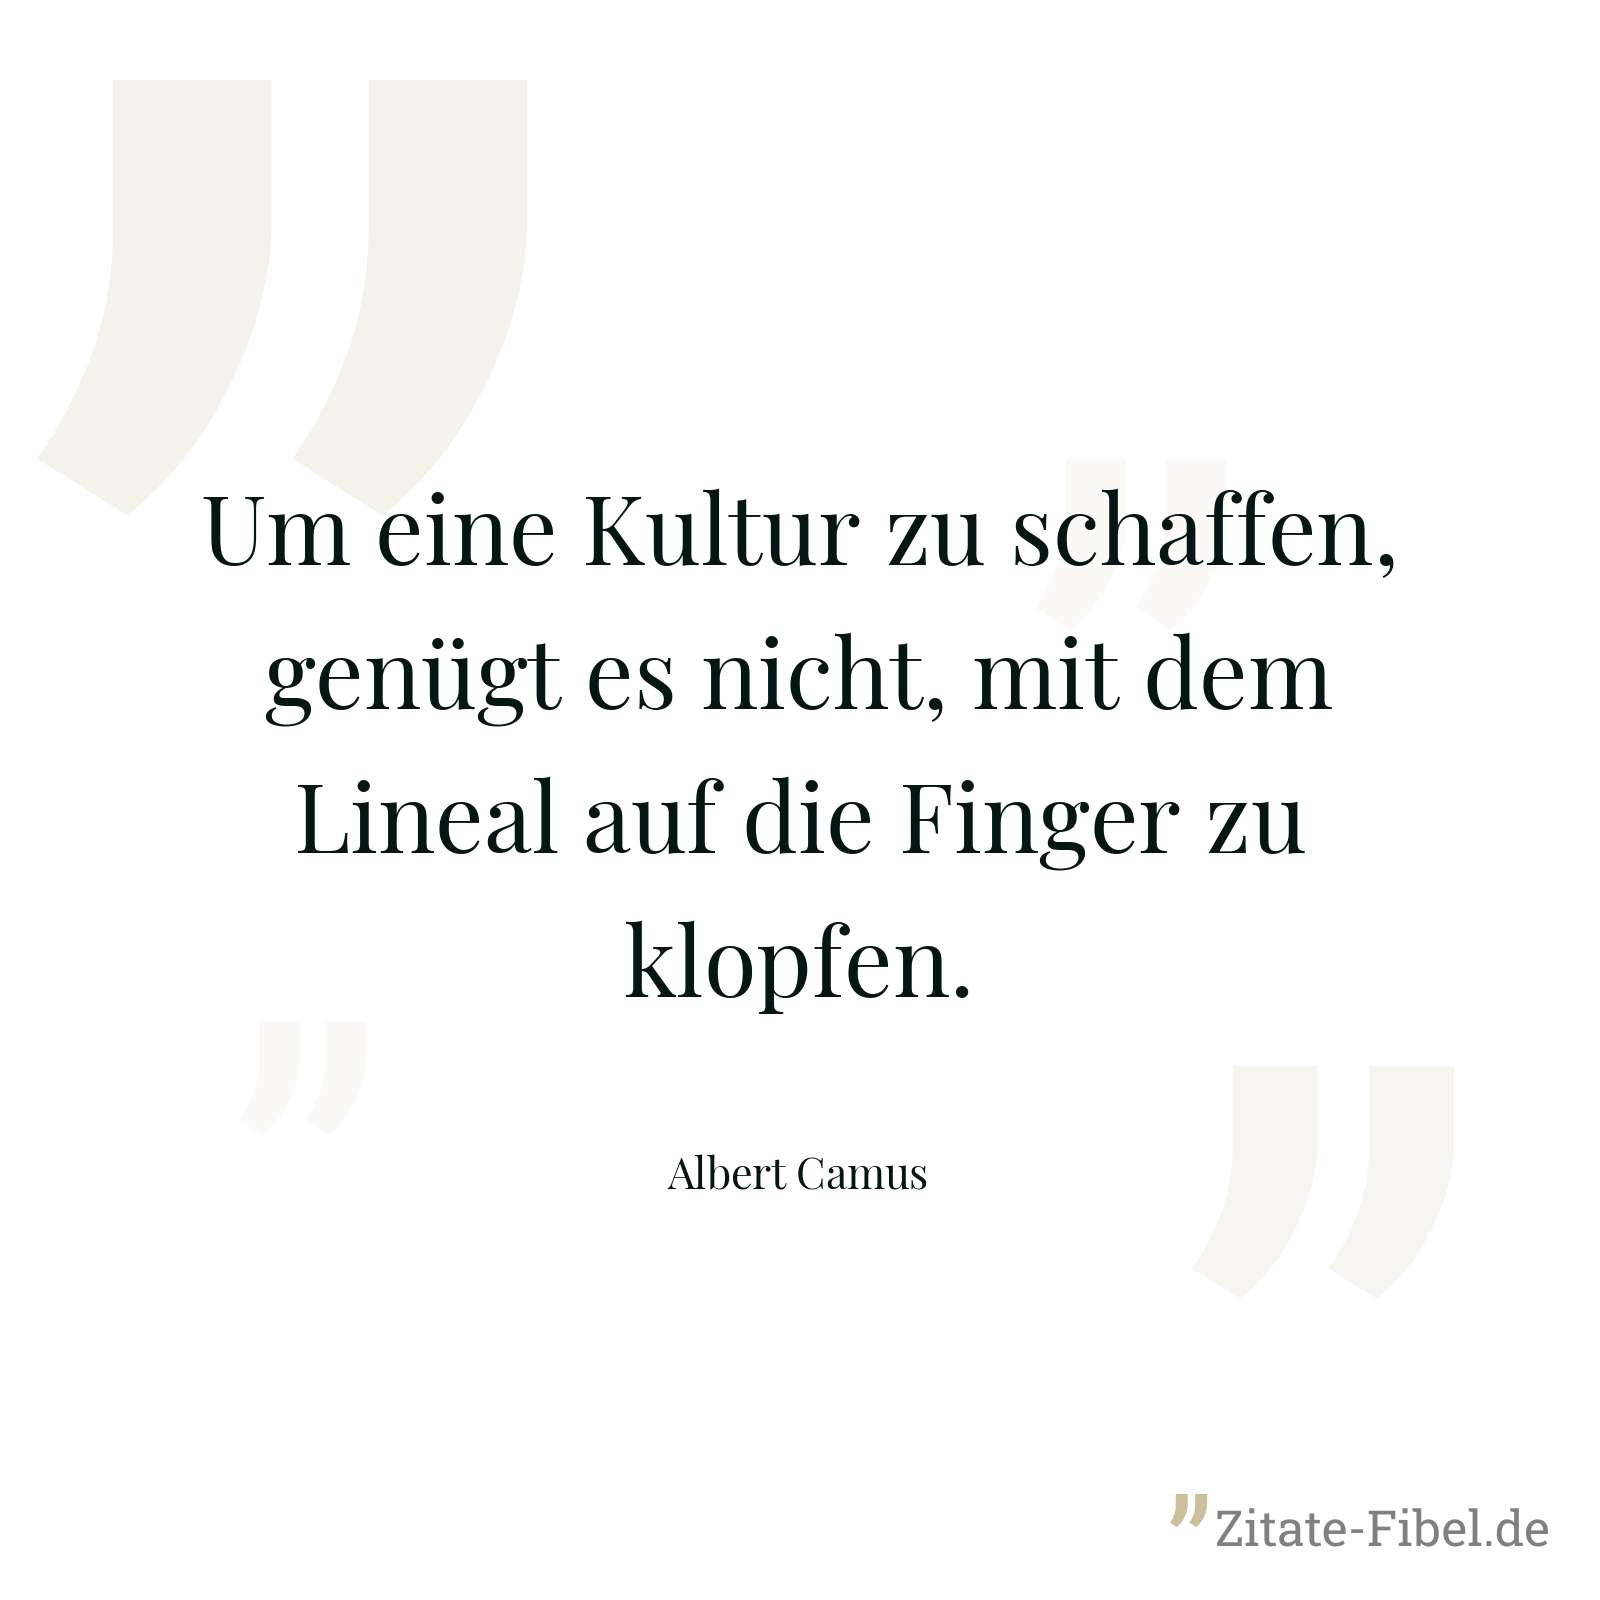 Um eine Kultur zu schaffen, genügt es nicht, mit dem Lineal auf die Finger zu klopfen. - Albert Camus